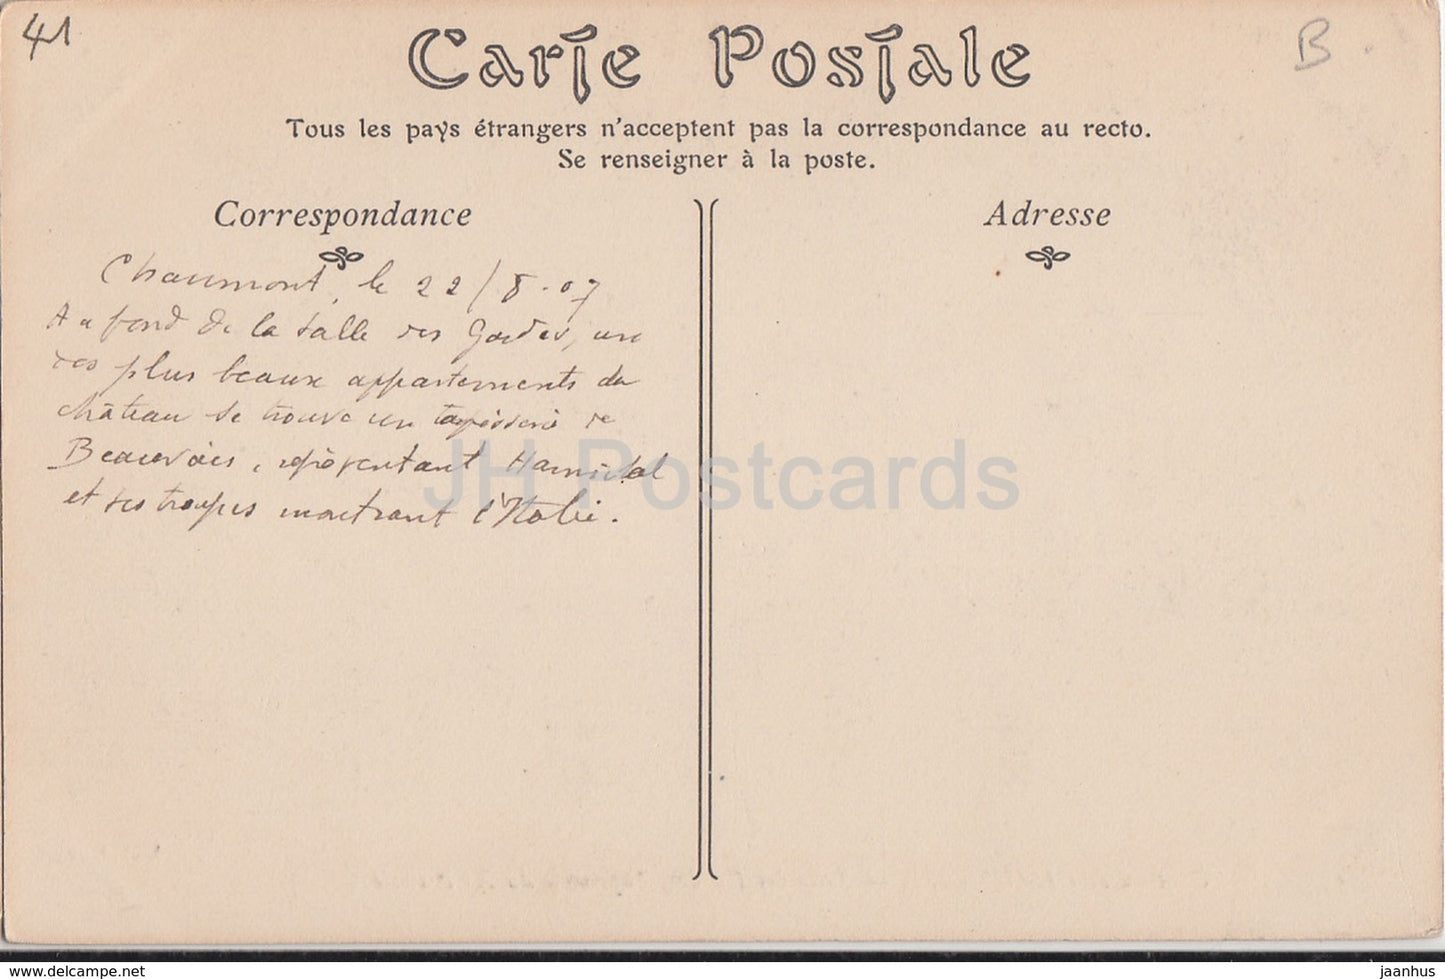 Chateau de Chaumont - Salle des Gardes - 55 - Schloss - alte Postkarte - 1907 - Frankreich - gebraucht